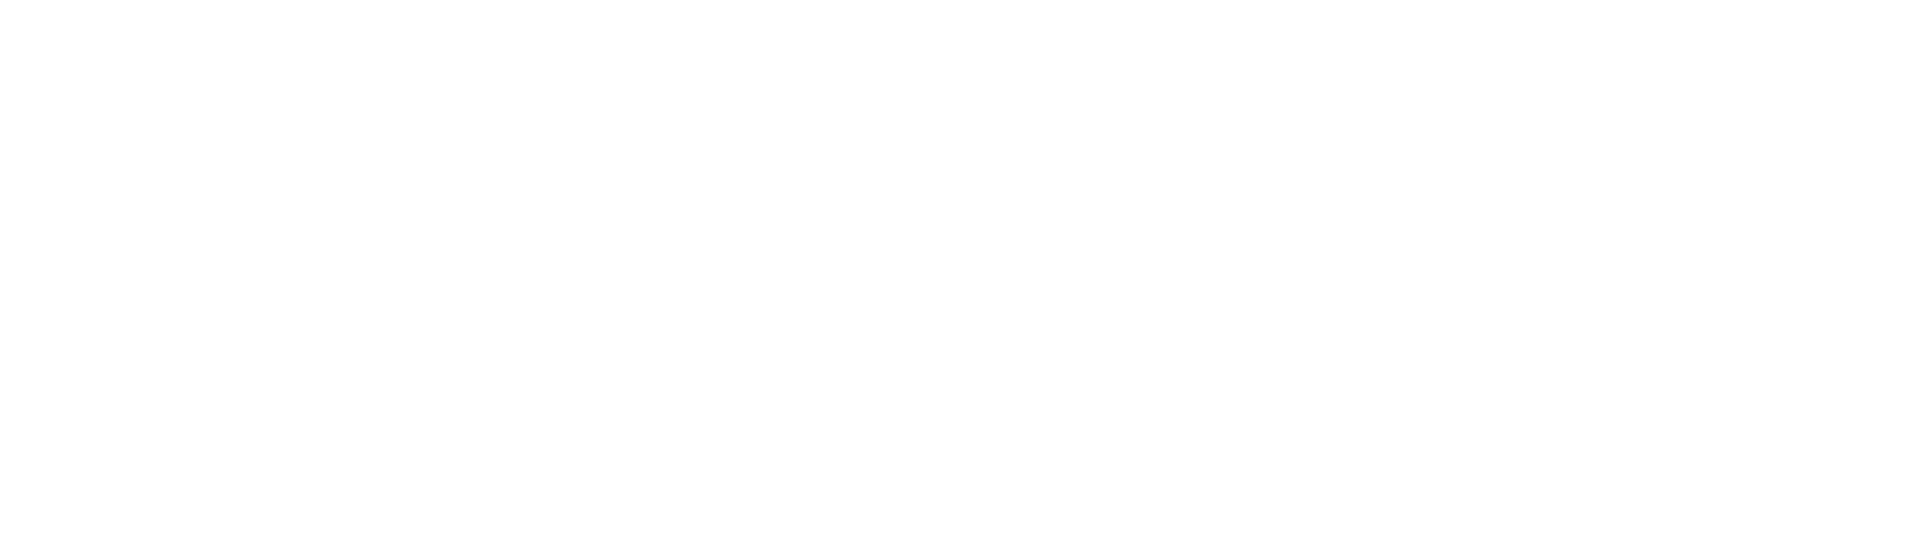 Sam harvard